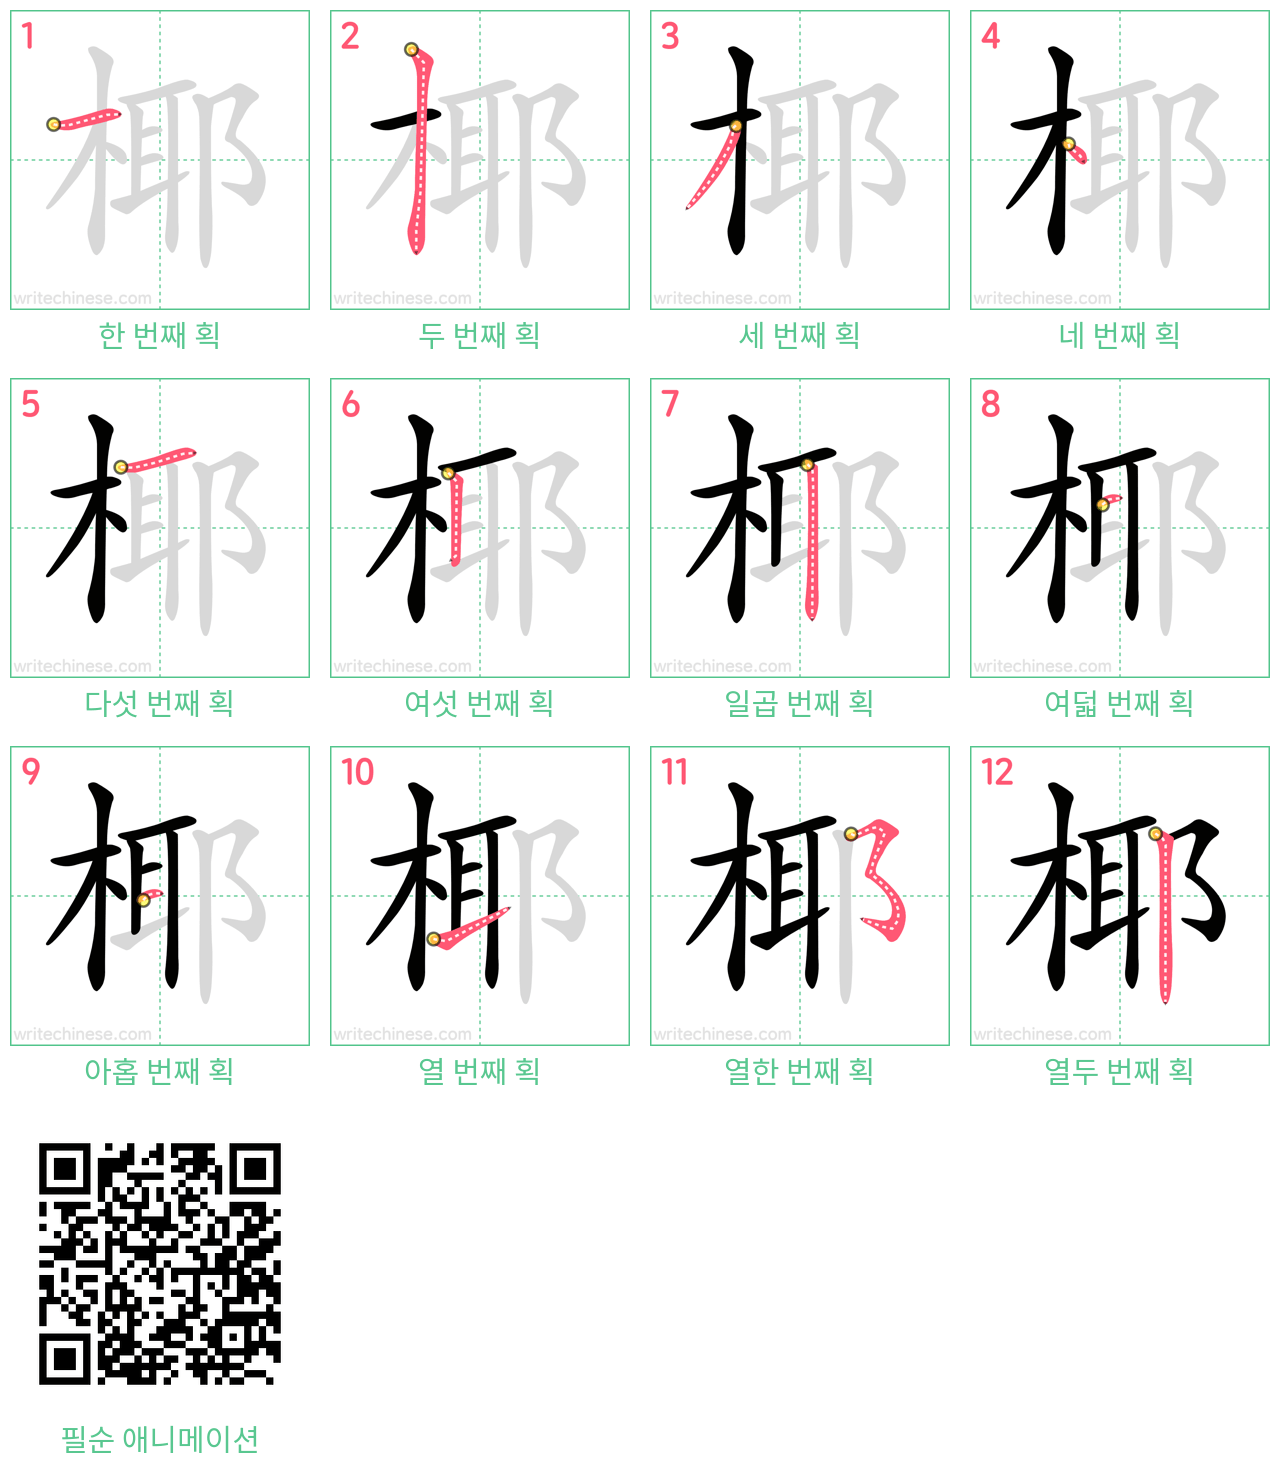 椰 step-by-step stroke order diagrams